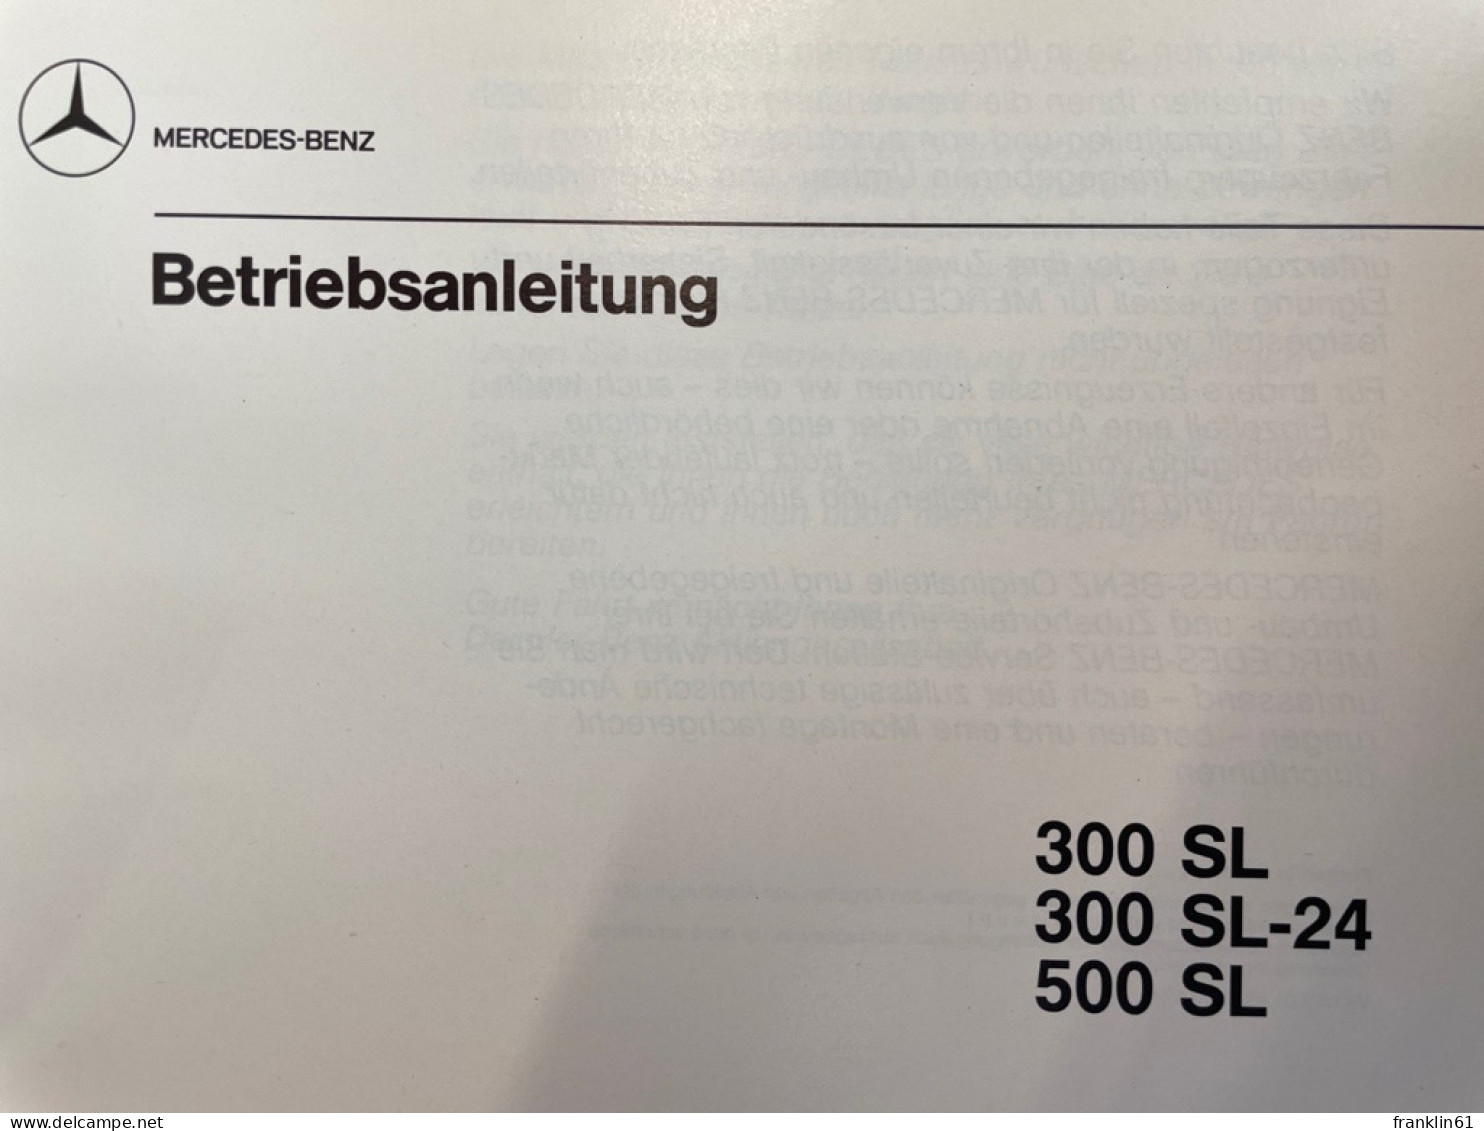 Mercedes-Benz. Betriebsanleitung. 300 SL, 300 SL-24, 500 SL. - Verkehr